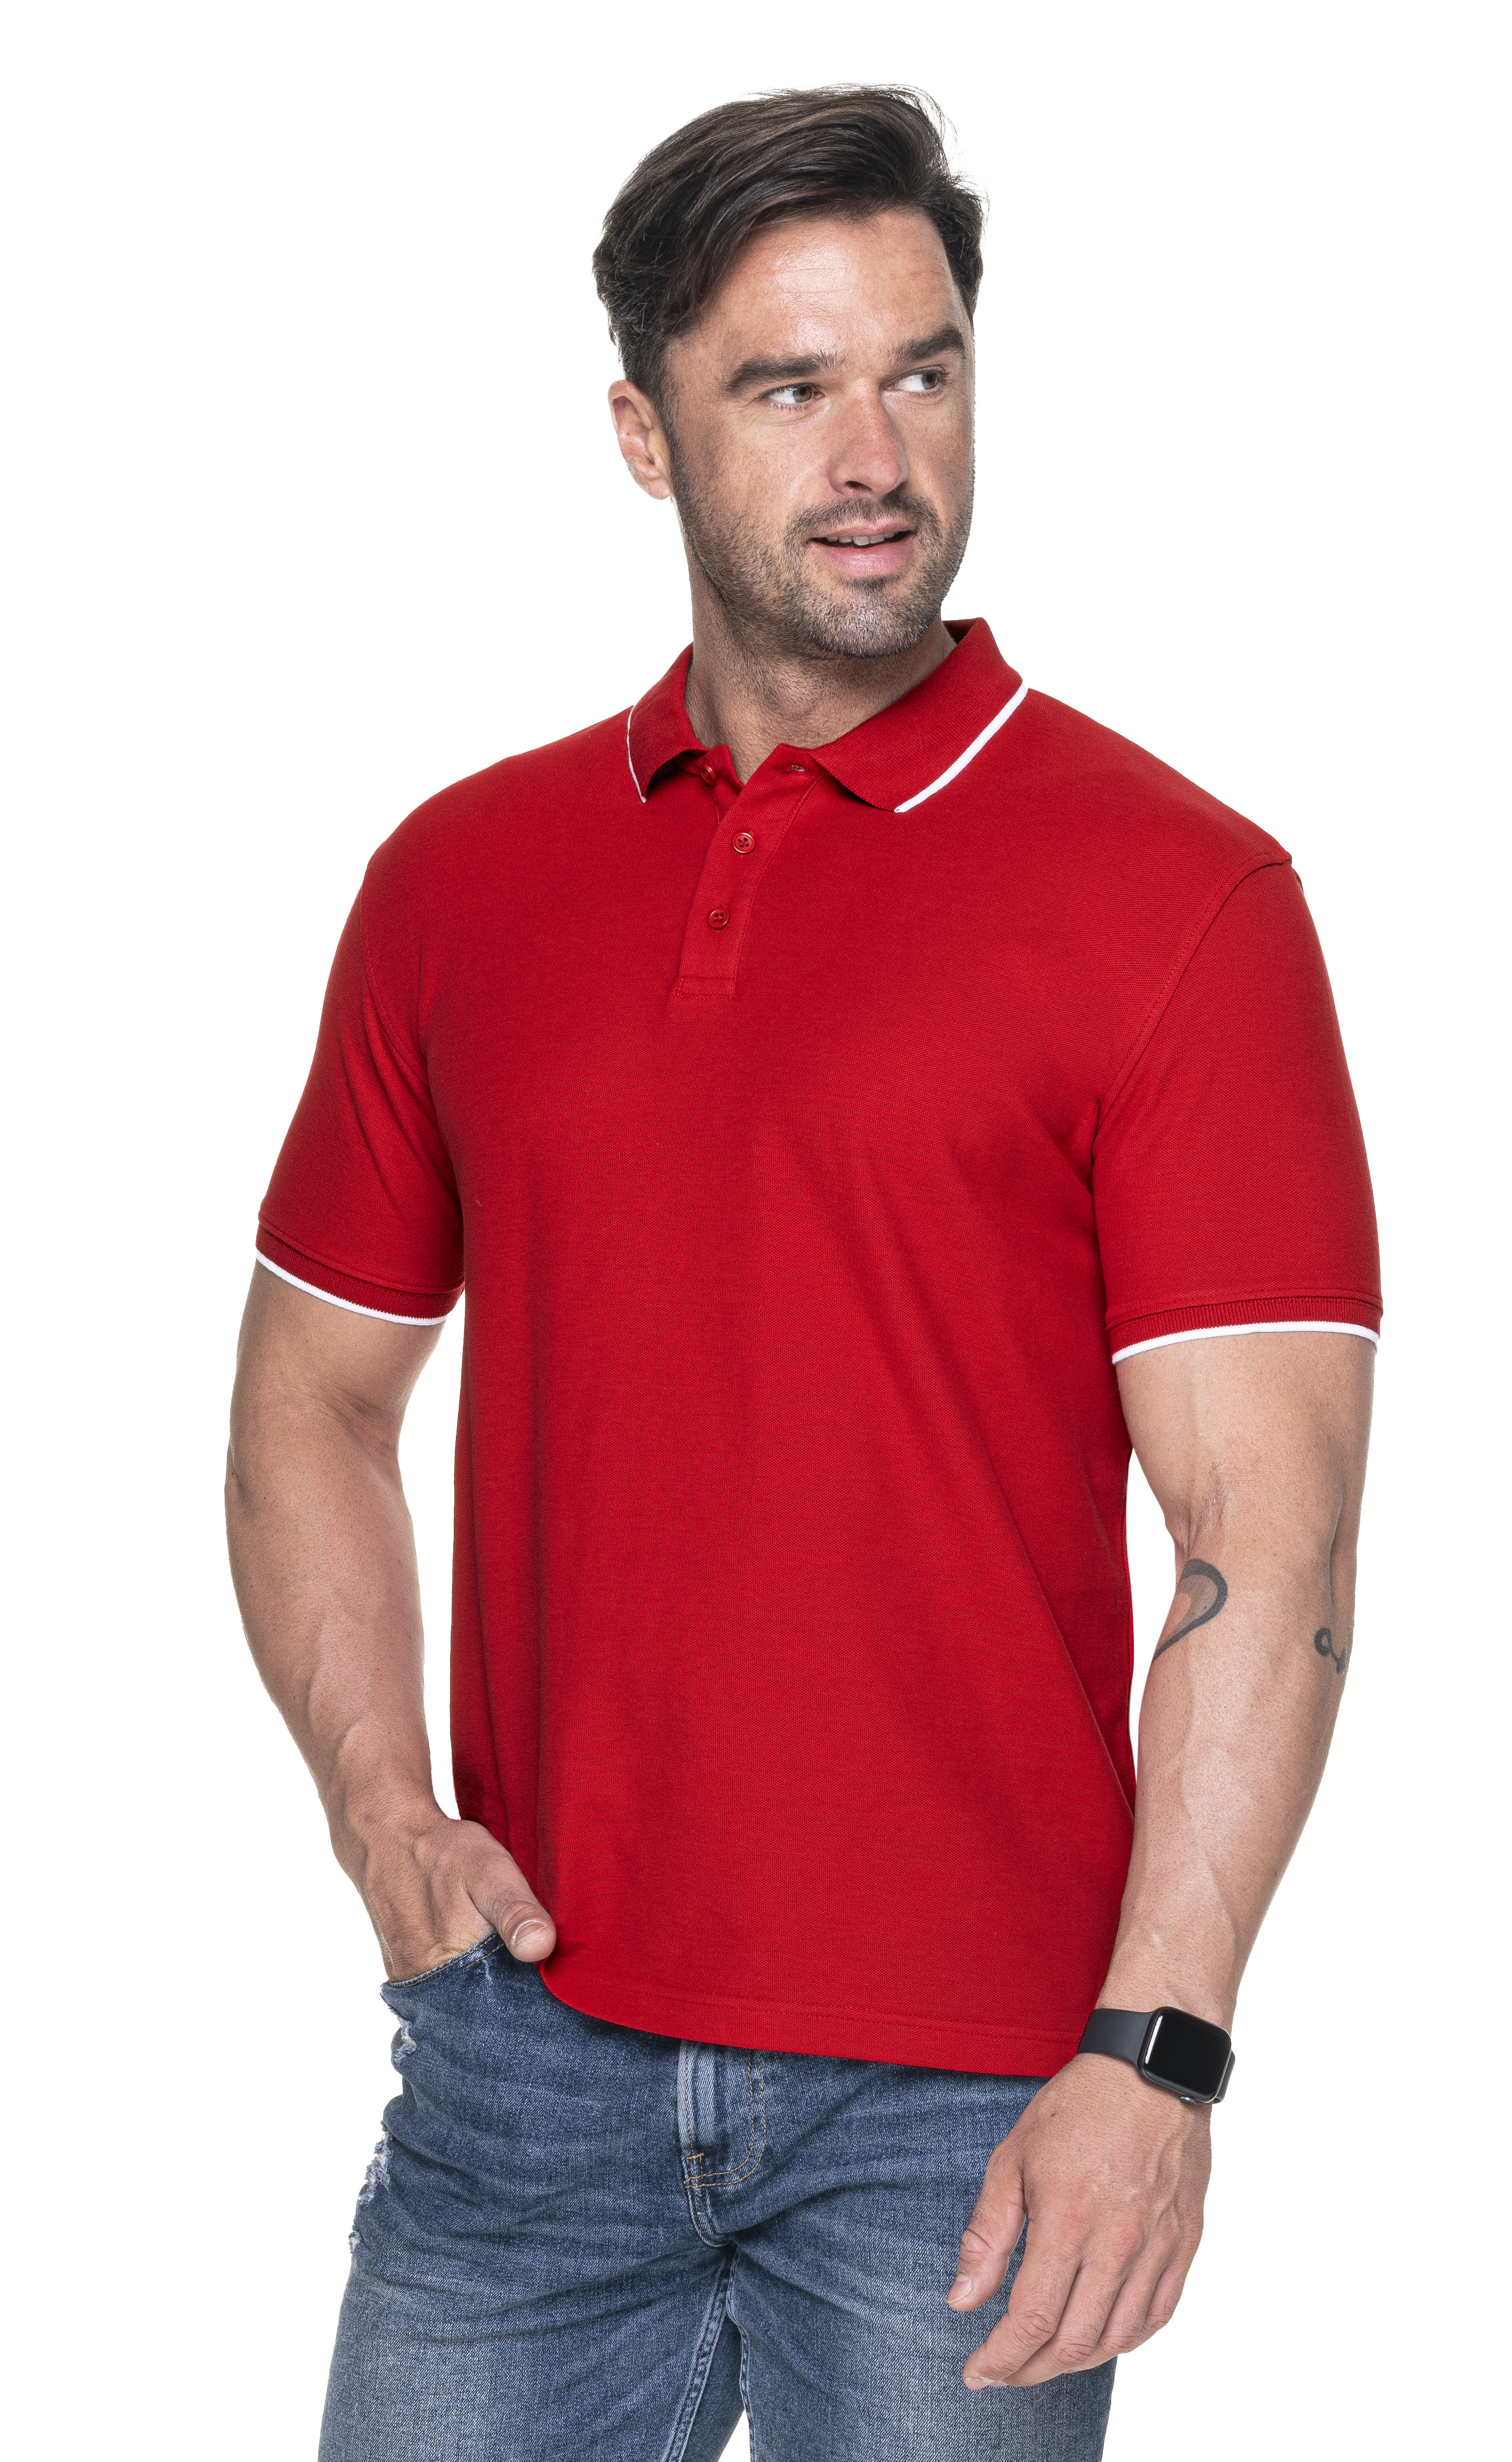 Koszulka Polo Promostars Line - czerwona z białym wykończeniem